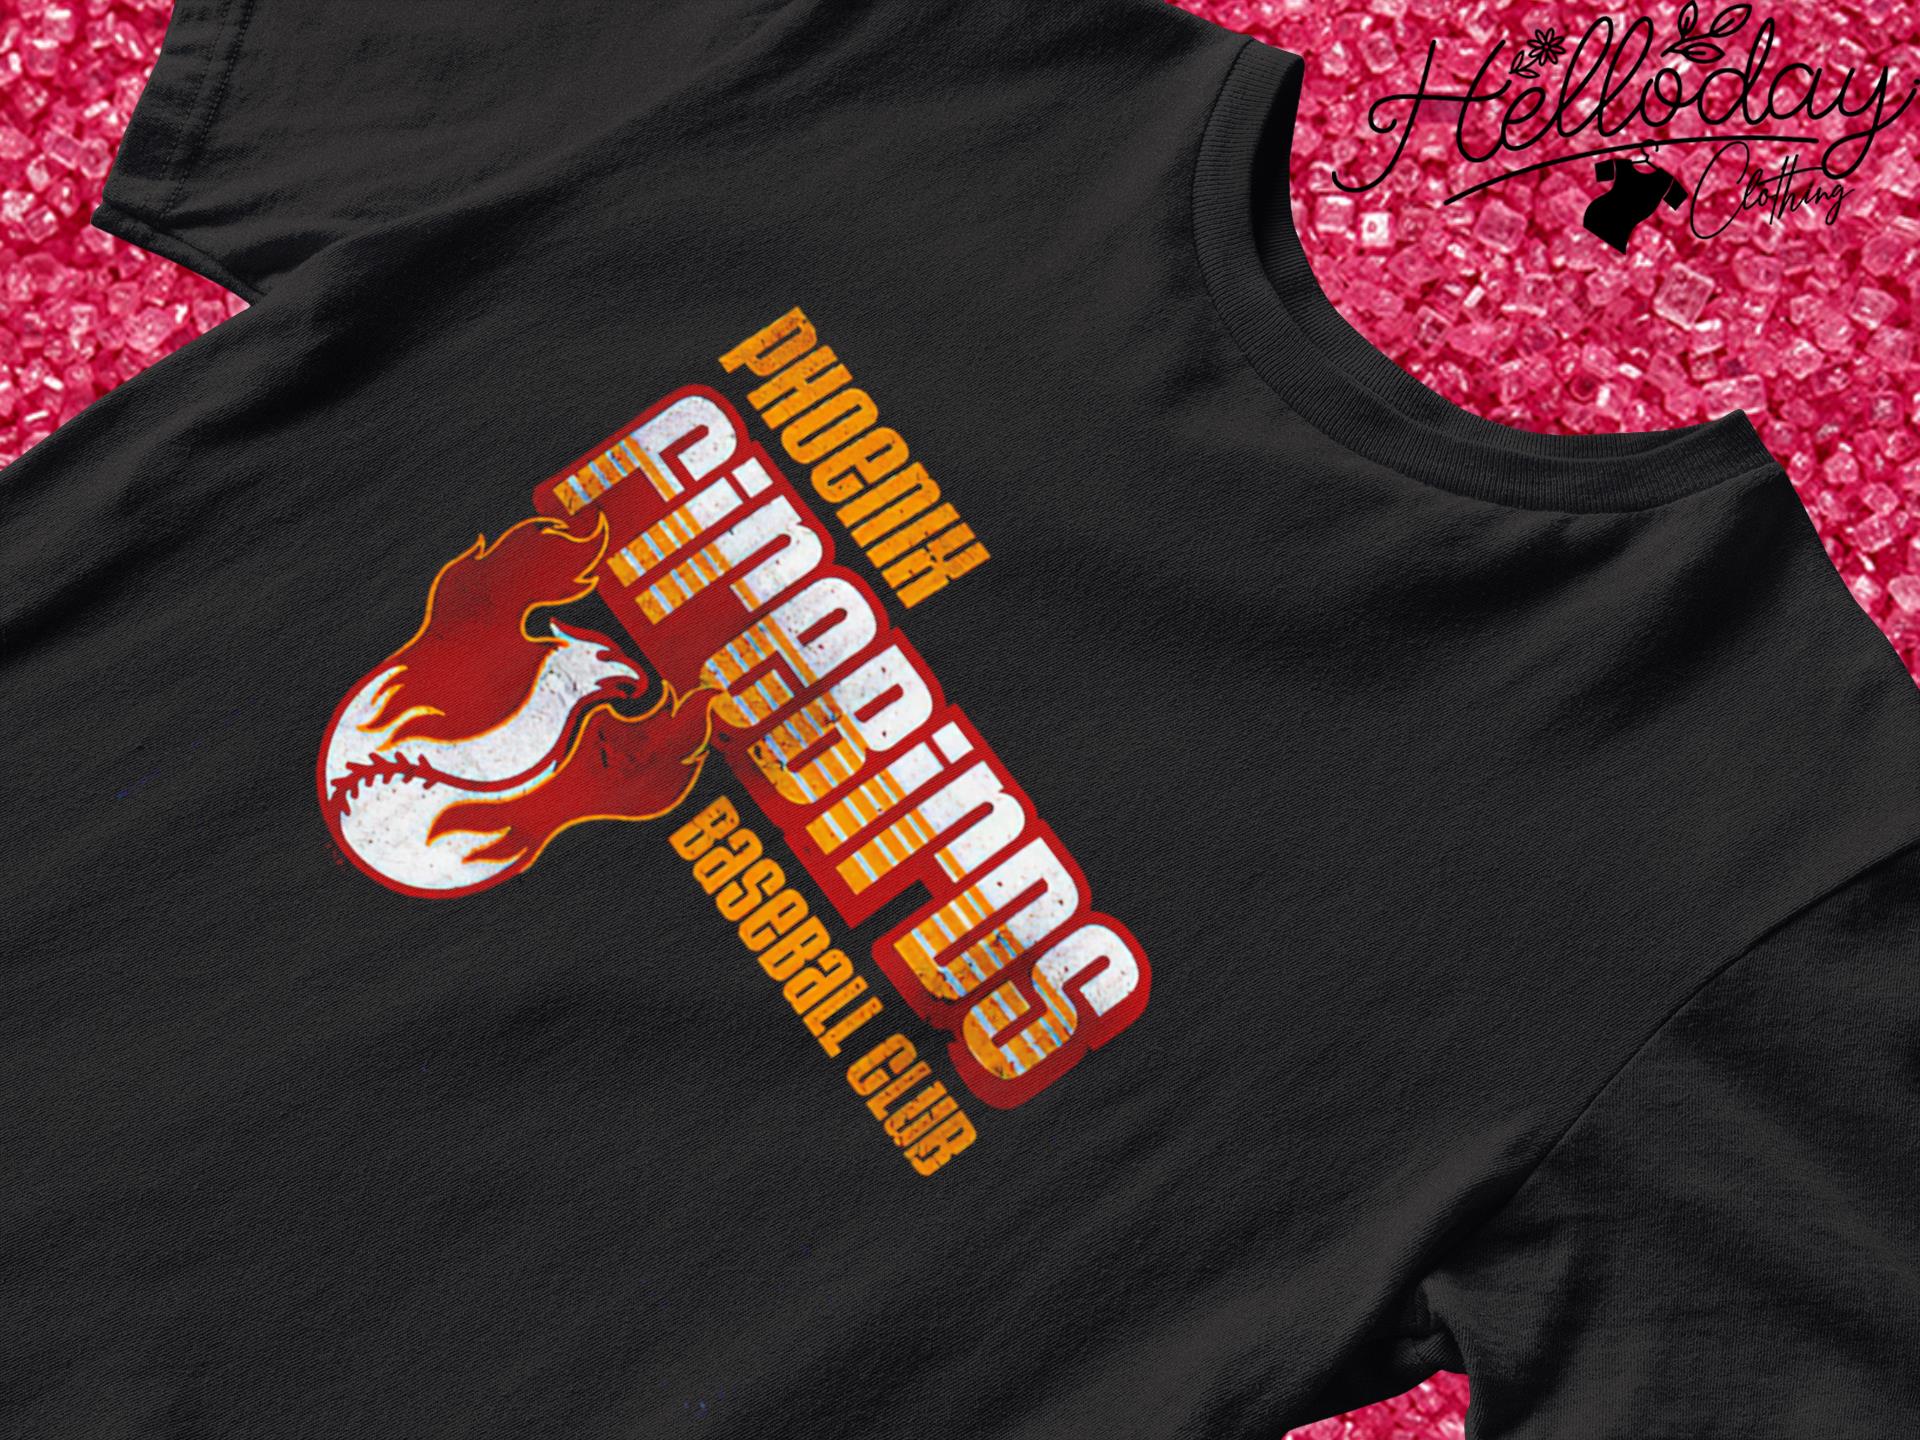 Phoenix Firebirds baseball club shirt